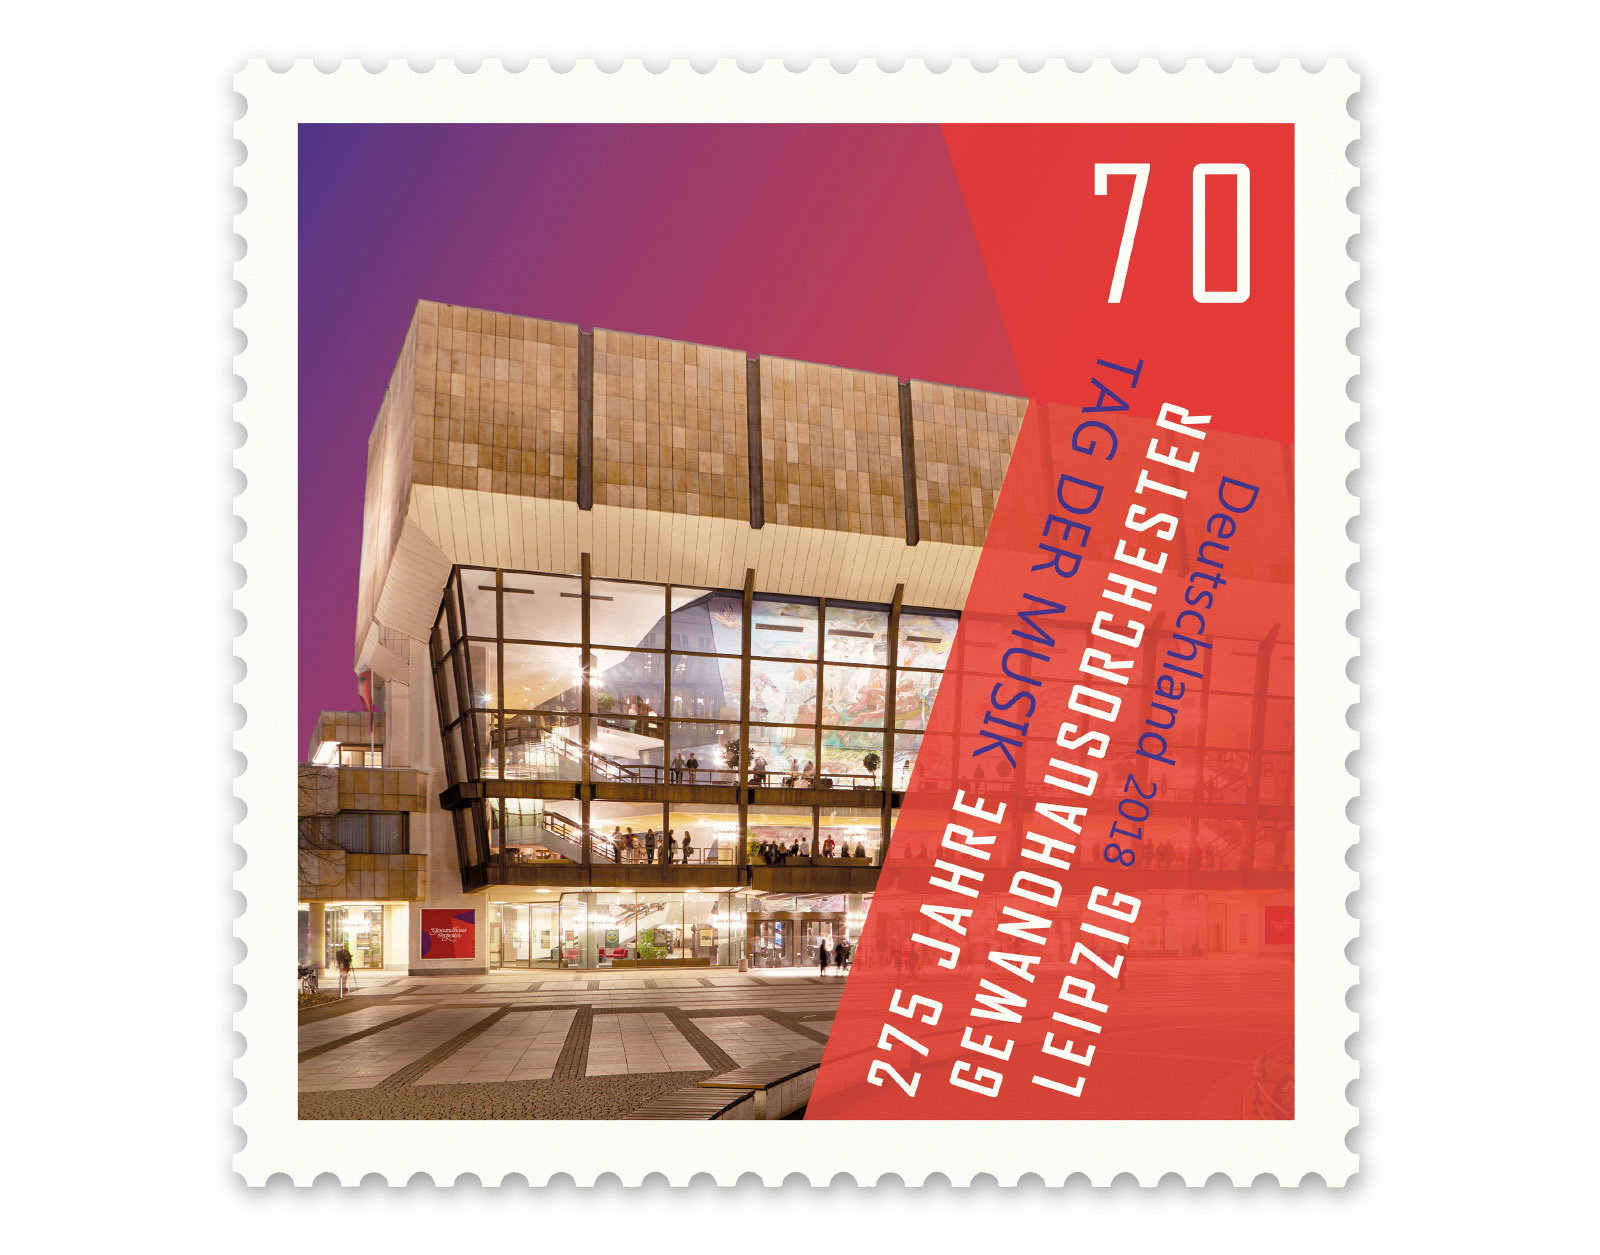 Sonderbriefmarke mit meiner Architekturaufnahme vom Gewandhaus Leipzig. Gestaltung: J. Dengler